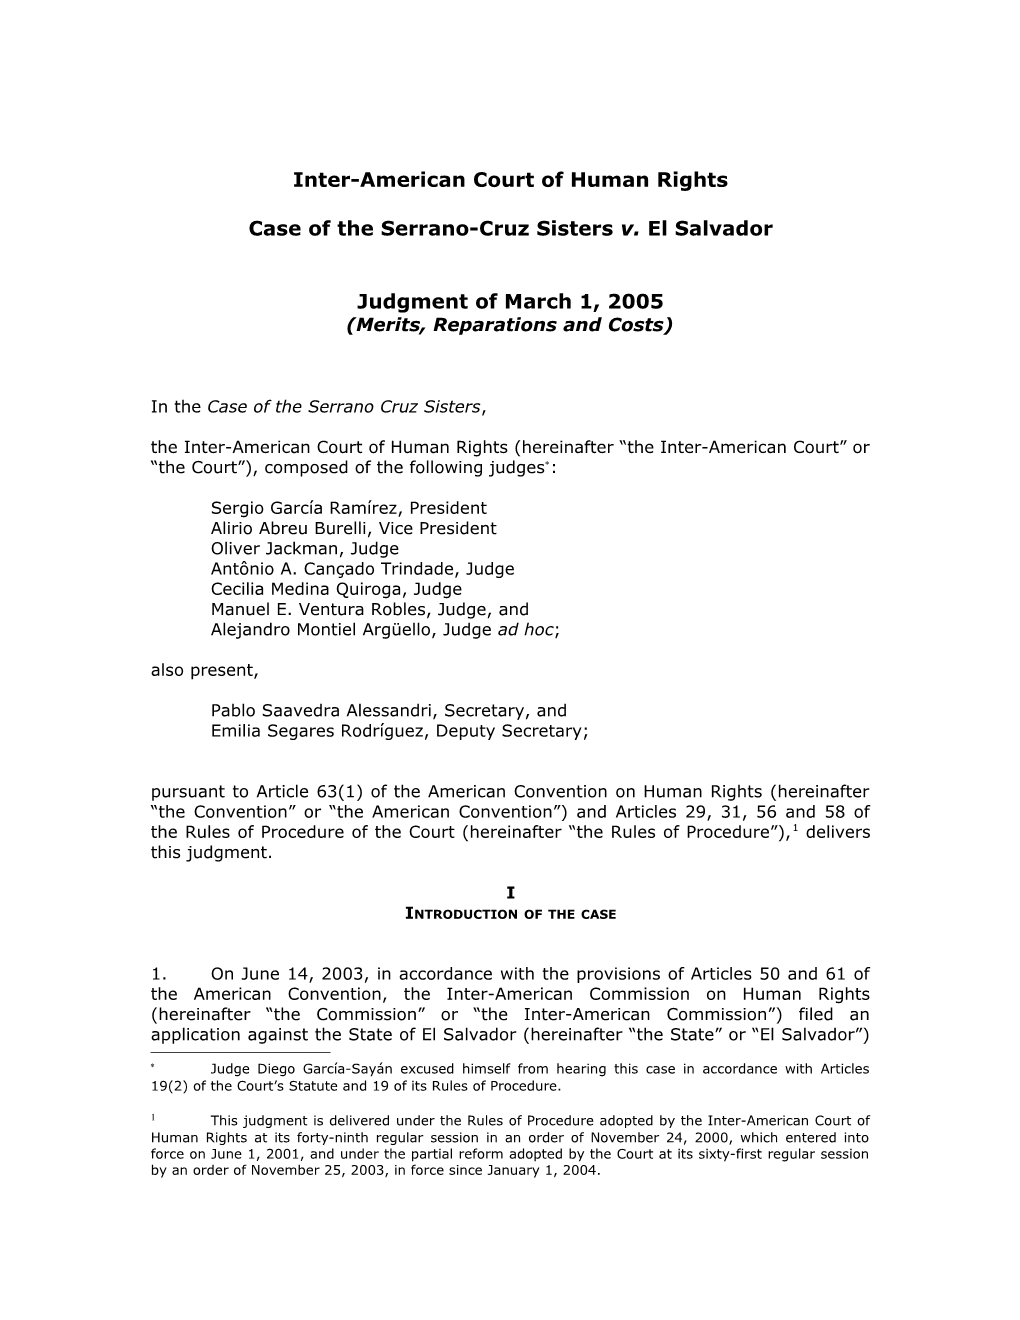 Corte Interamericana De Derechos Humanos s1